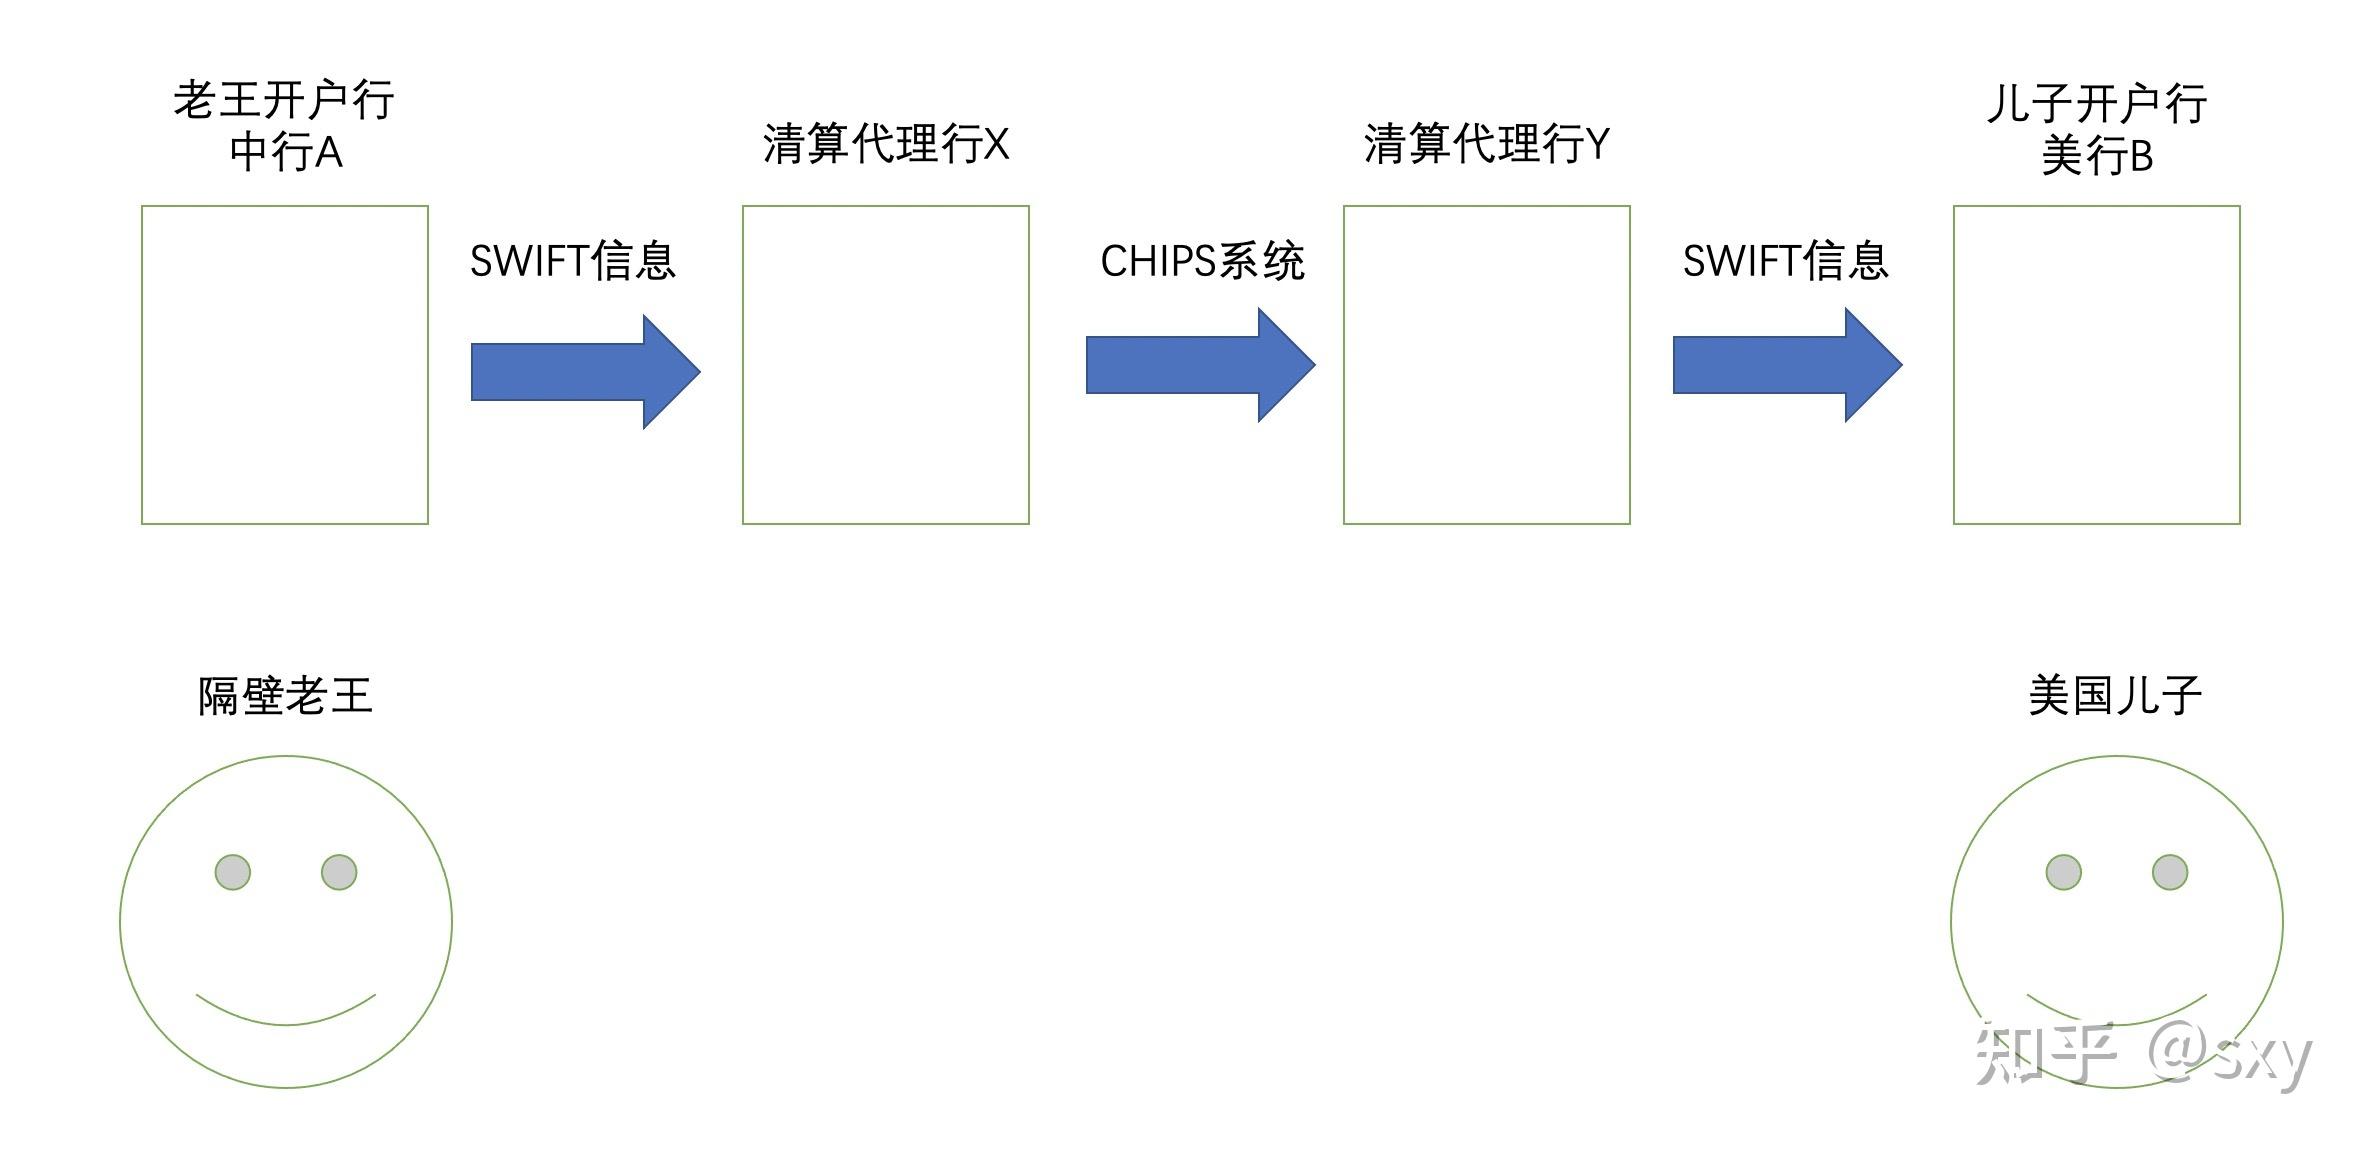 swift码,汇款金额等信息)中行a通过swift系统把信息发给代理行x代理行